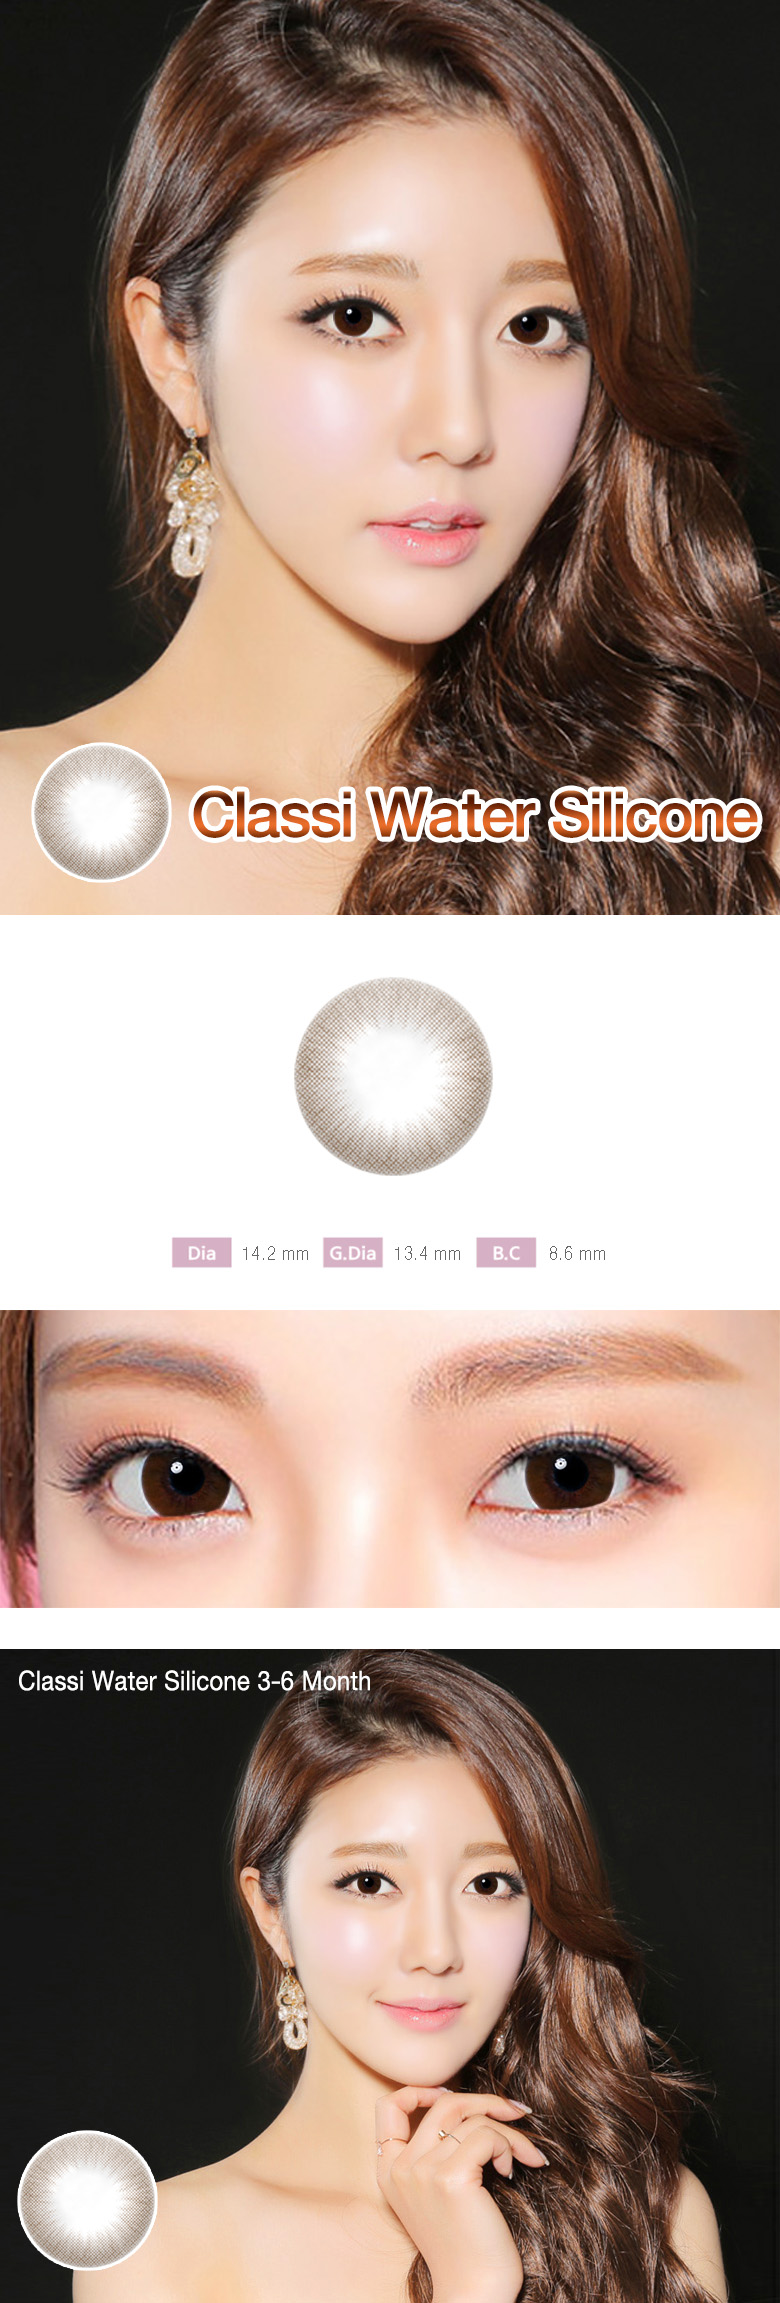 [チョコ/CHOCO] クラシウォーター シリコン - Classi Water Silicone [14.2mm]